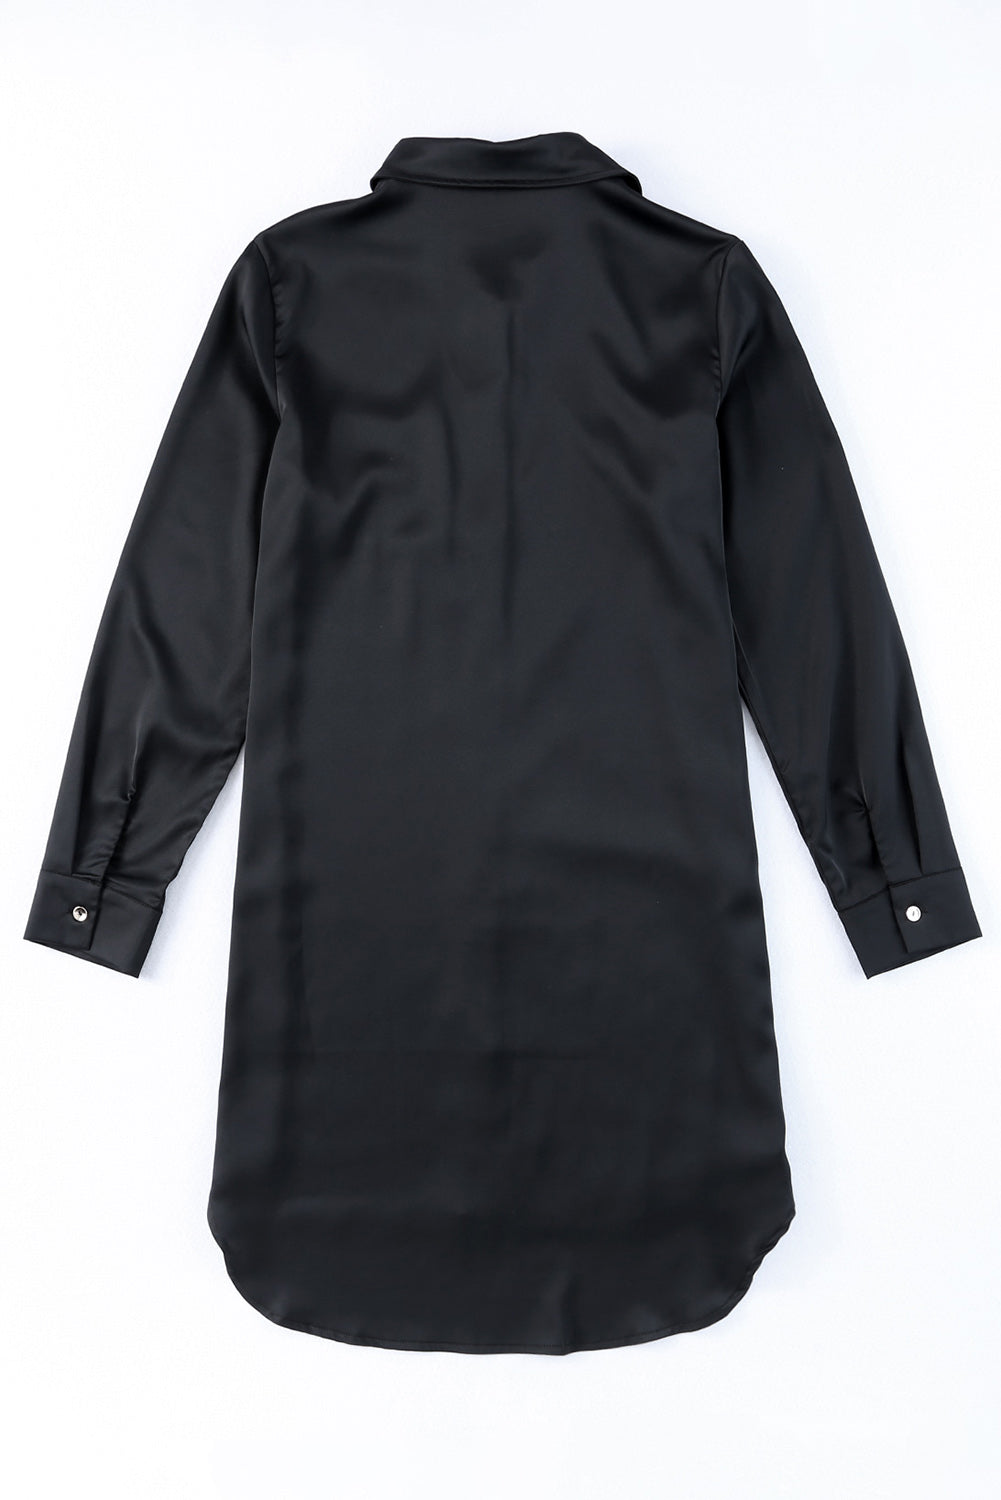 Črna srajčna obleka z žepi in gumbi z bleščicami